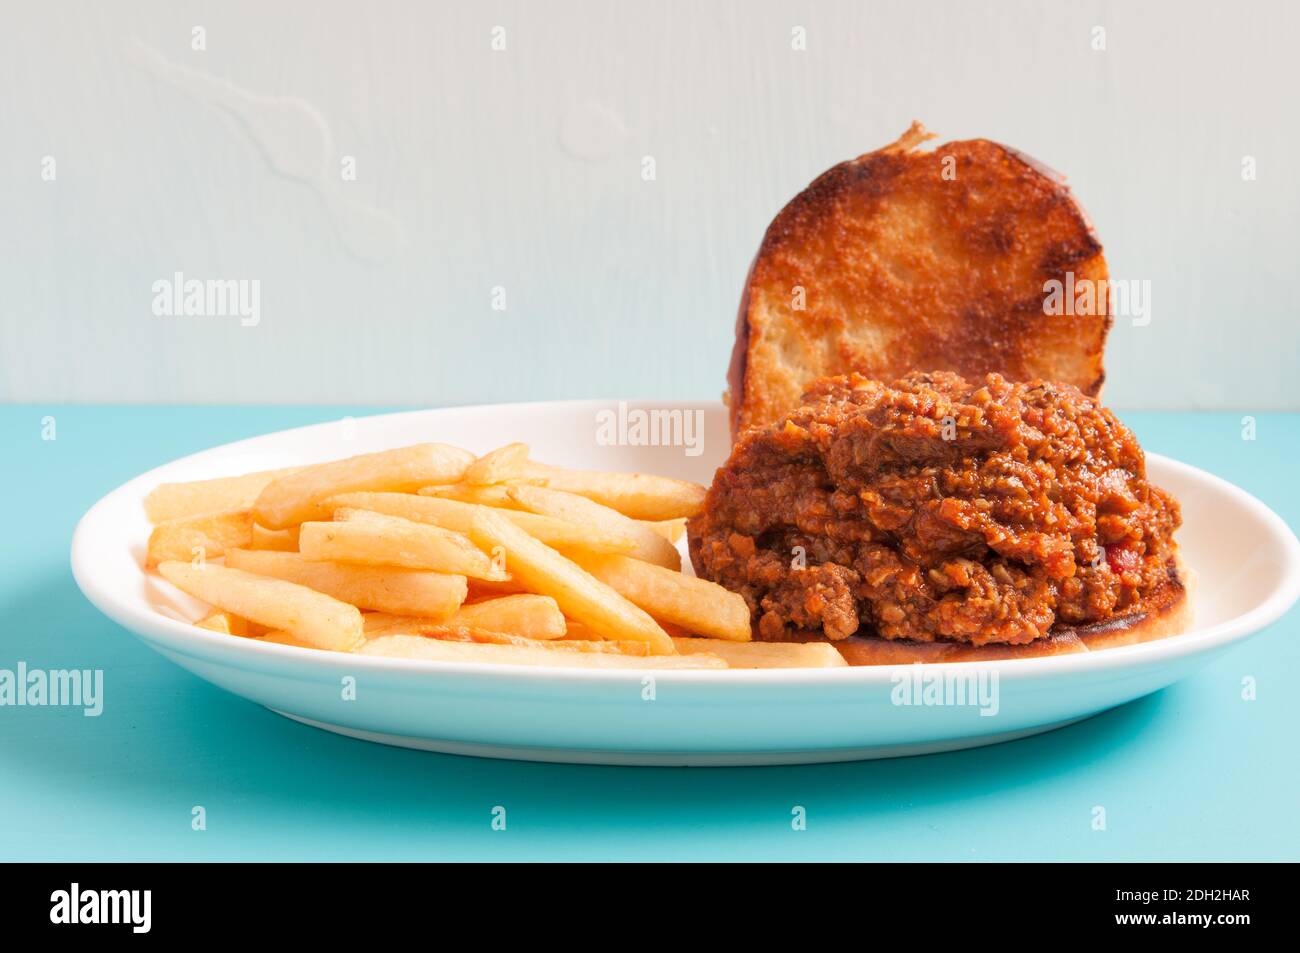 sloppy joe sandwich with french fries Stock Photo - Alamy